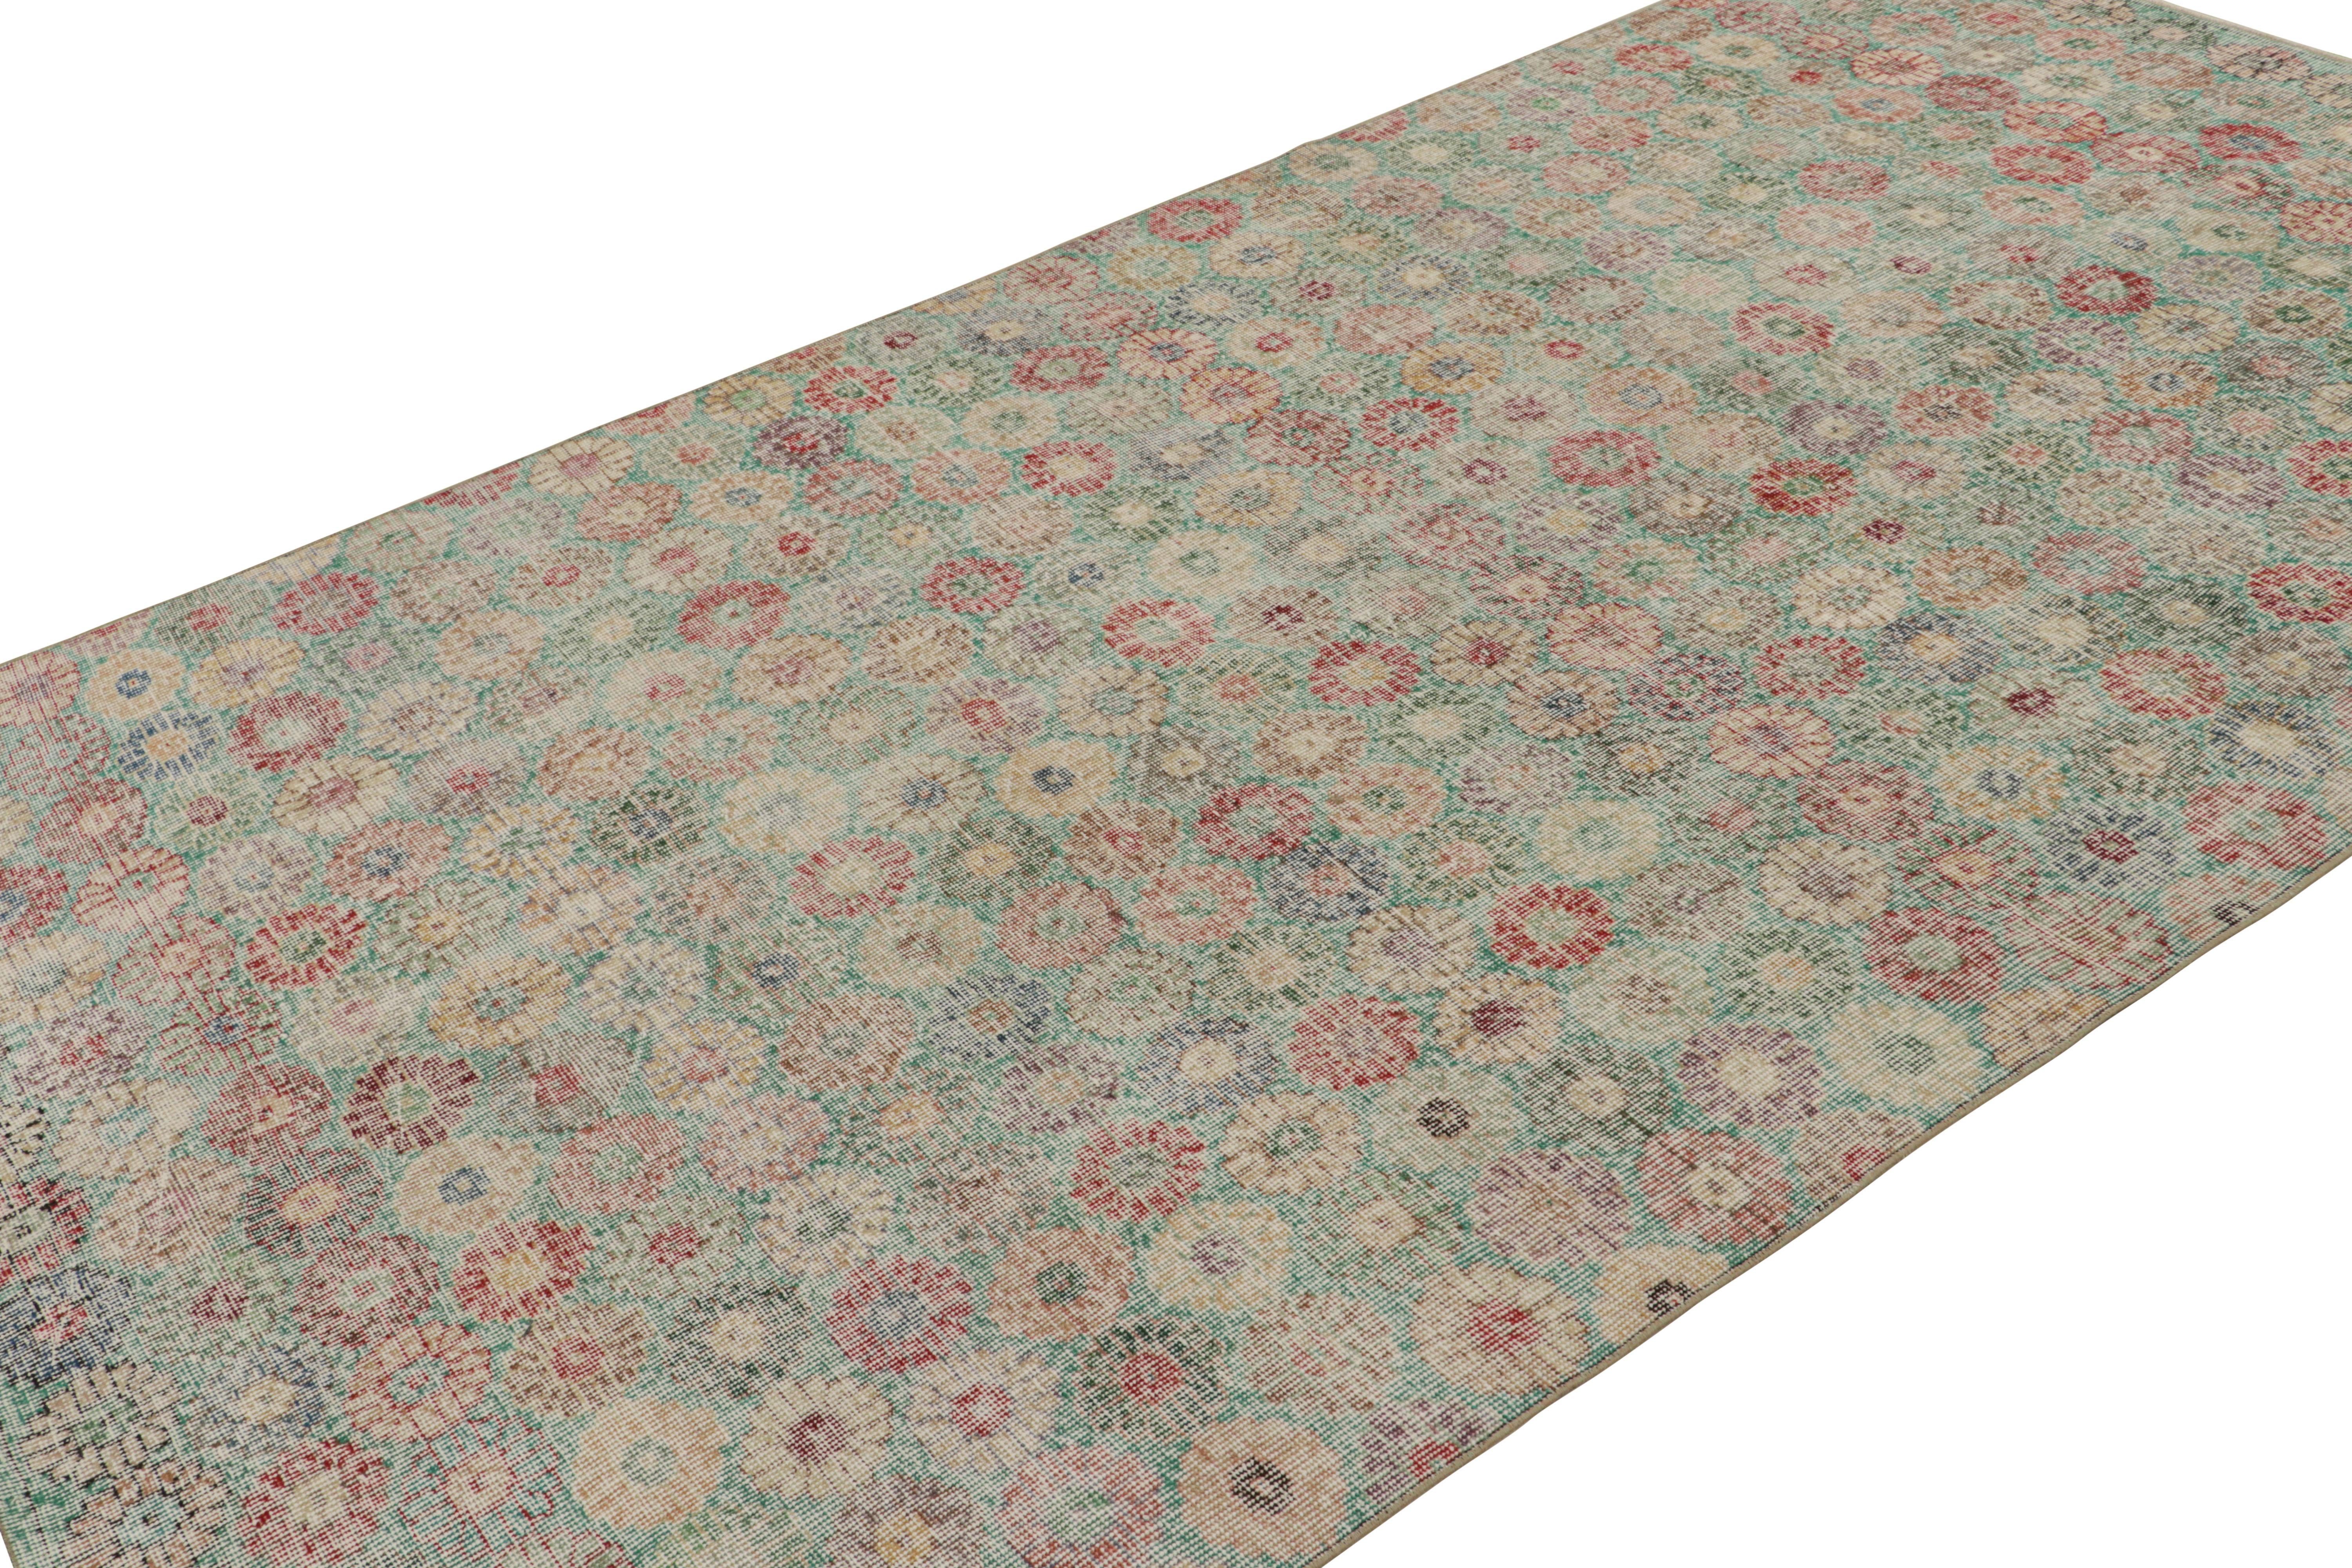 Dieser handgeknüpfte Wollteppich (ca. 1960-1970) im Format 5x10 ist vermutlich ein seltener Teppich von Zeki Múren, dessen florale Muster seine einzigartige Sensibilität für die Moderne der Mitte des Jahrhunderts unter den türkischen Webern dieser